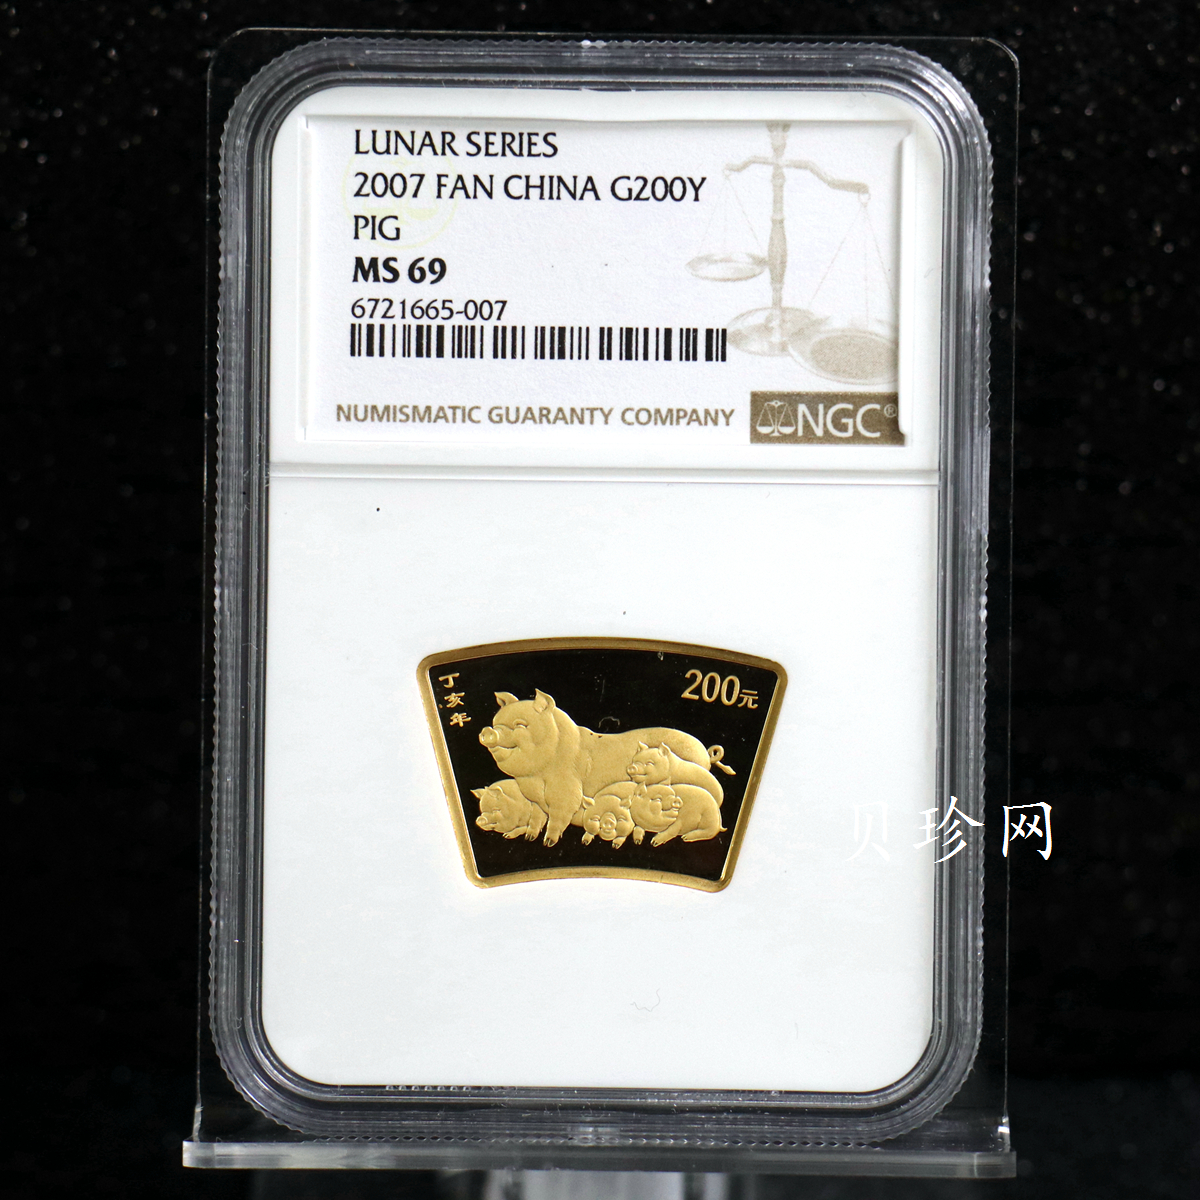 【061205】2007年丁亥猪年生肖1/2盎司扇形普制金币